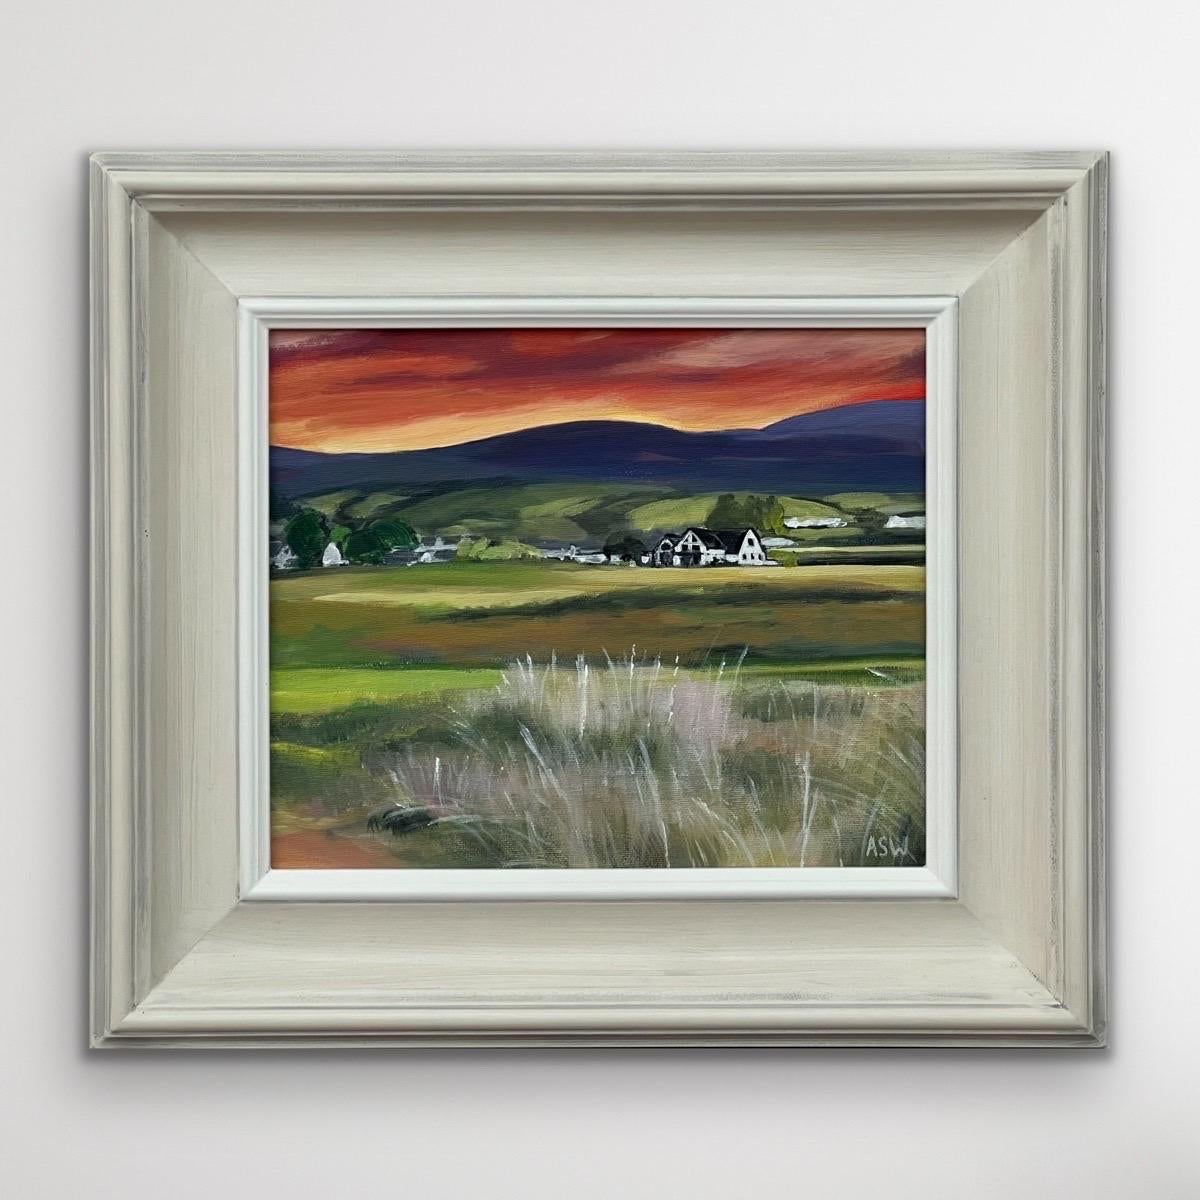 Sonnenuntergang auf dem Golfplatz von Brora in den schottischen Highlands von der zeitgenössischen britischen Künstlerin Angela Wakefield. Dieses einzigartige Original zeigt einen tiefroten, orangefarbenen Sonnenuntergang an der Ostküste von